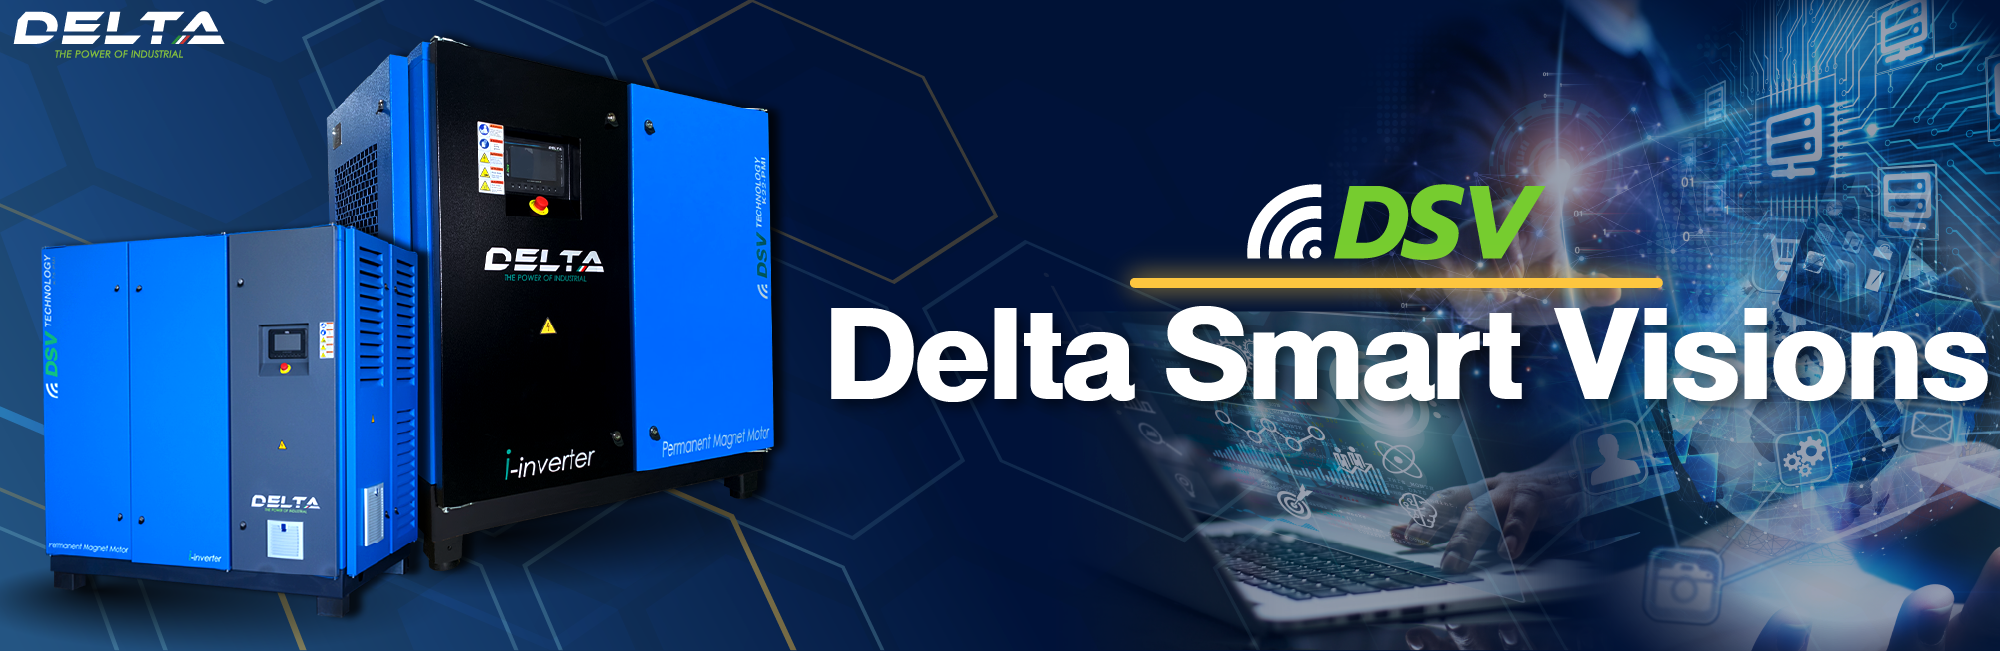 ปั๊มลมเดลต้า DSV delta smart visions